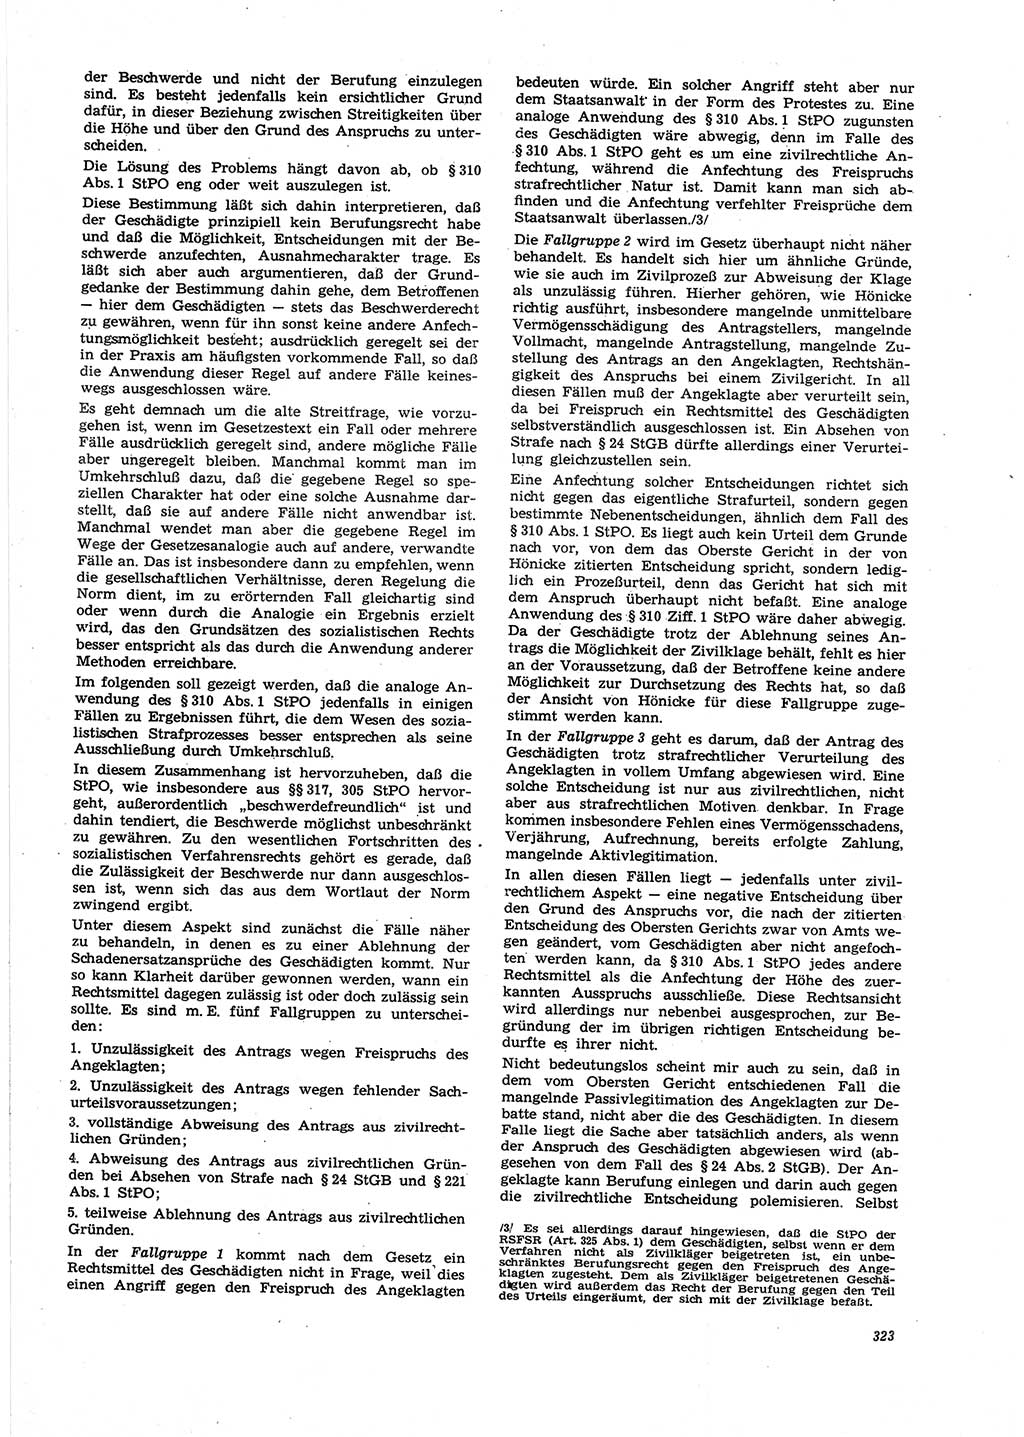 Neue Justiz (NJ), Zeitschrift für Recht und Rechtswissenschaft [Deutsche Demokratische Republik (DDR)], 27. Jahrgang 1973, Seite 323 (NJ DDR 1973, S. 323)